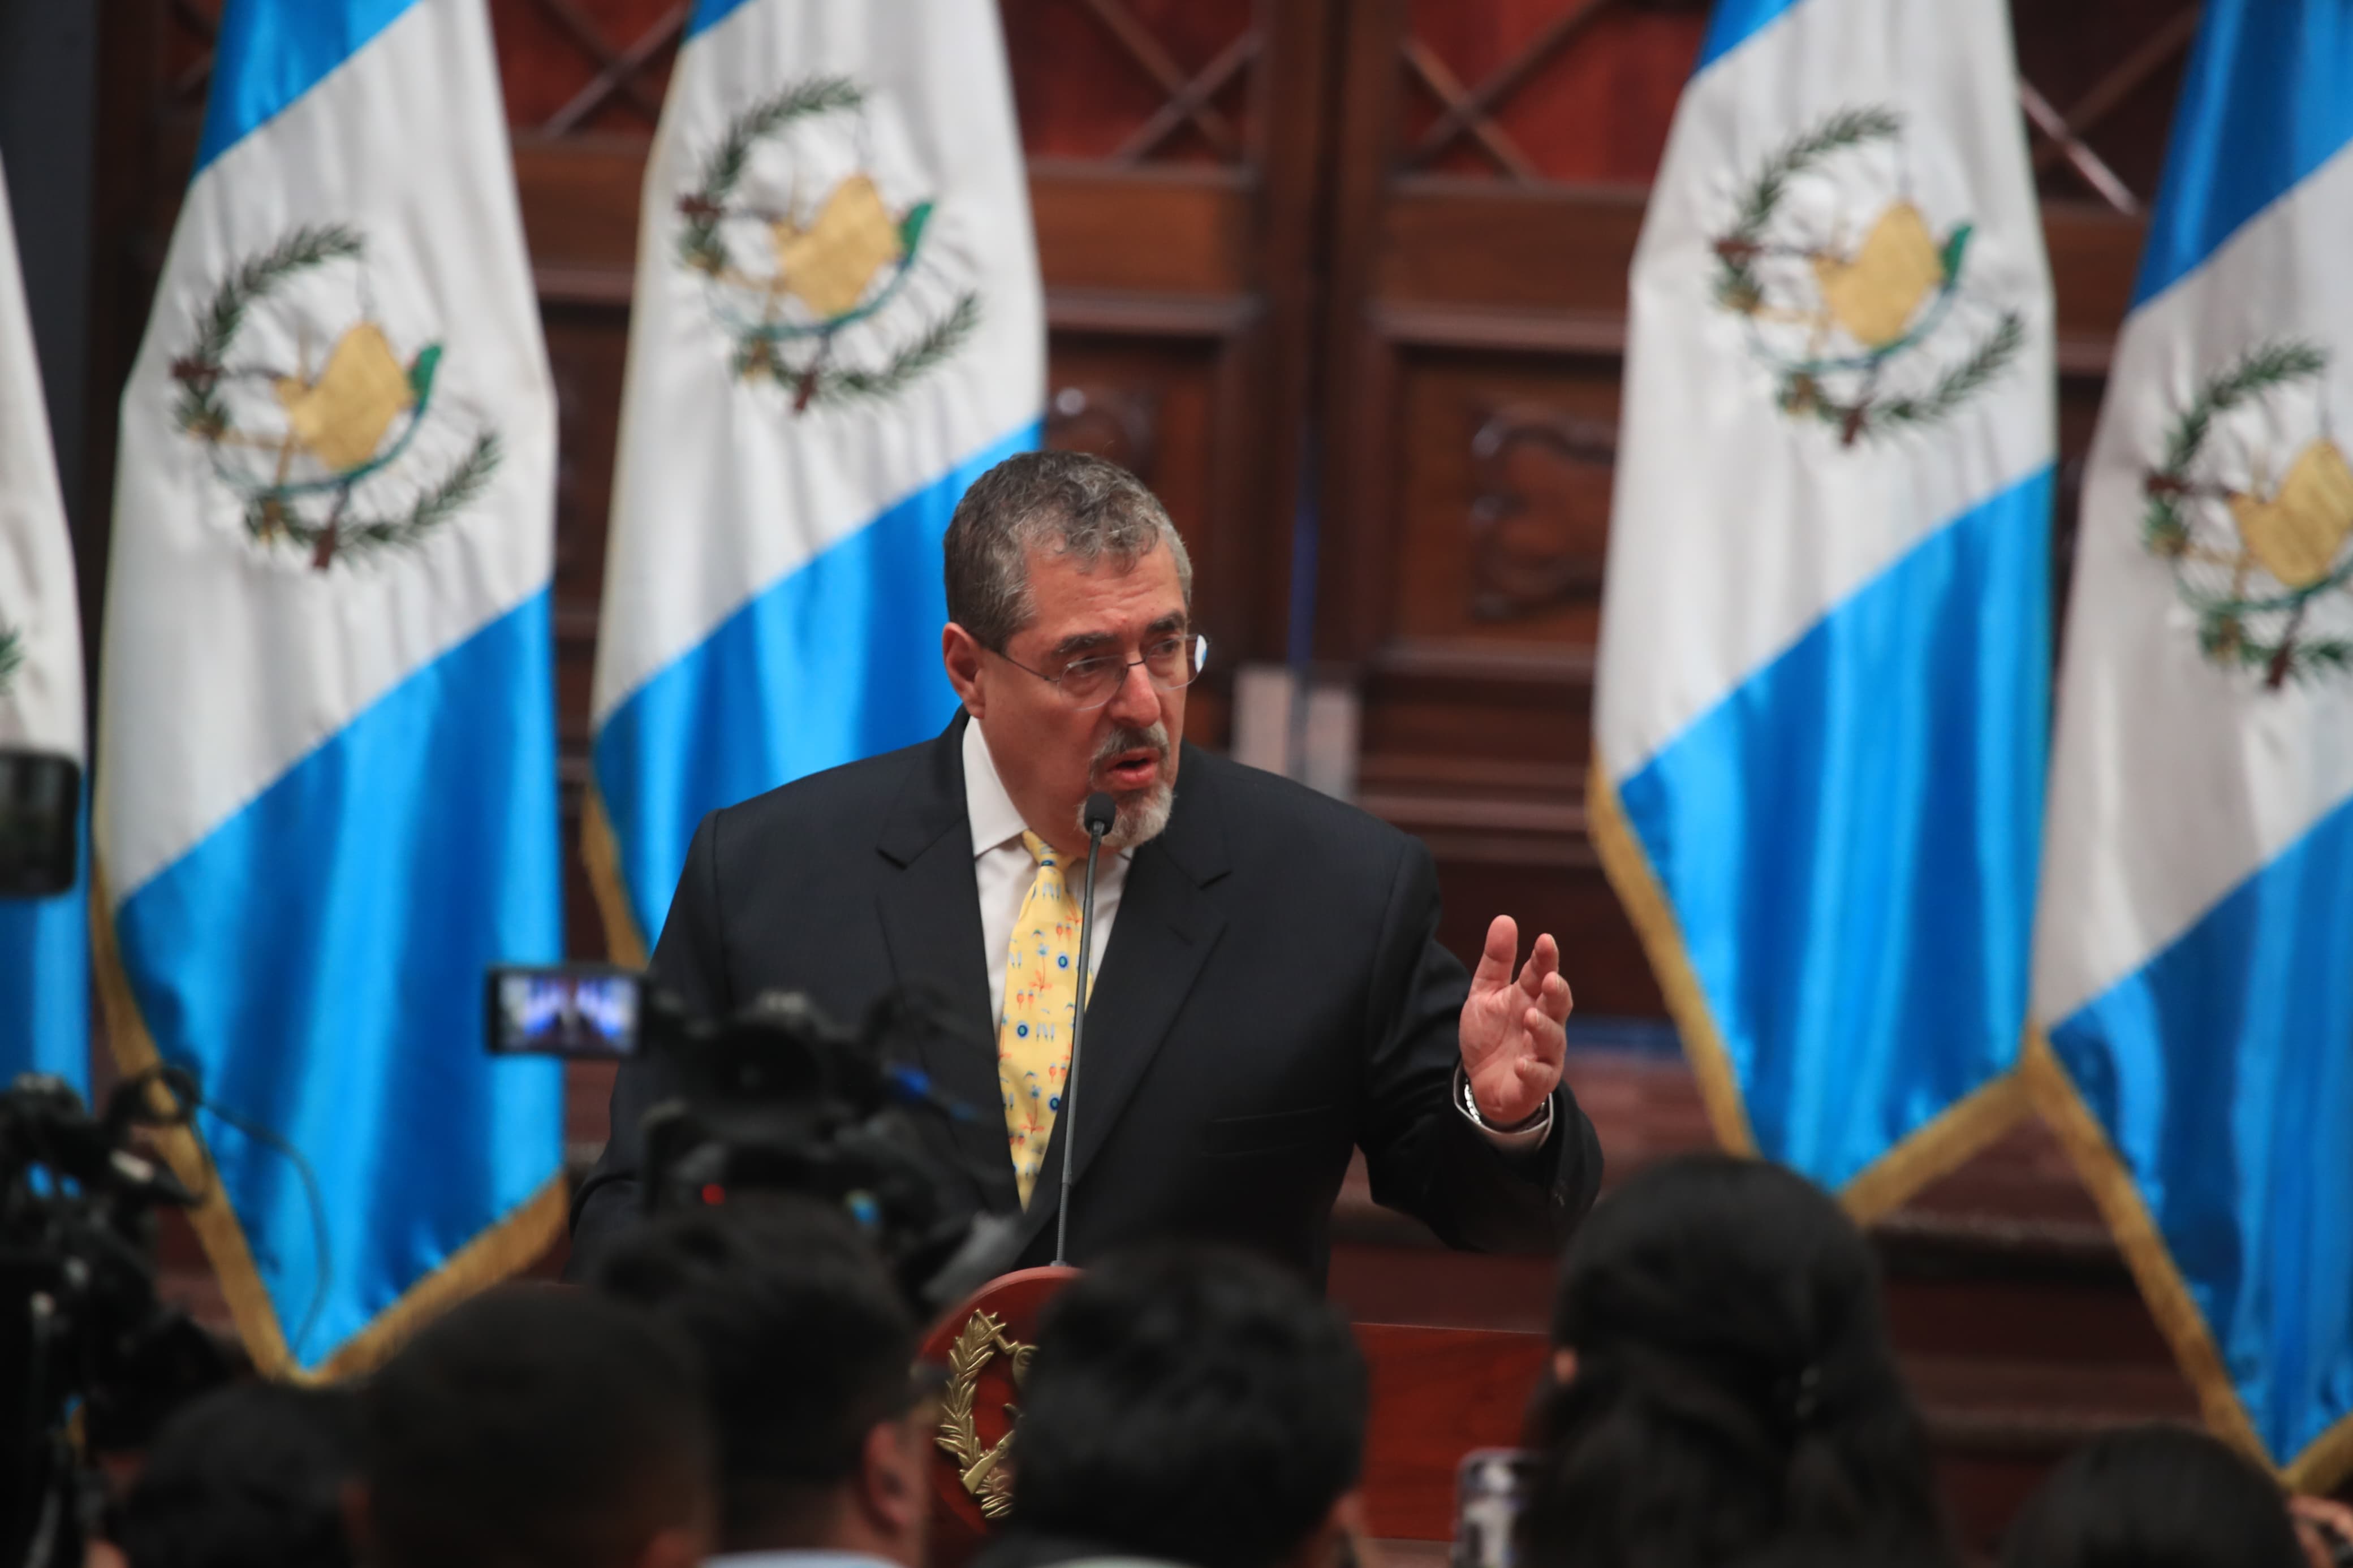 La política exterior de Guatemala podría ampliarse en el actual gobierno. (Foto Prensa Libre: Carlos Hernández Ovalle)